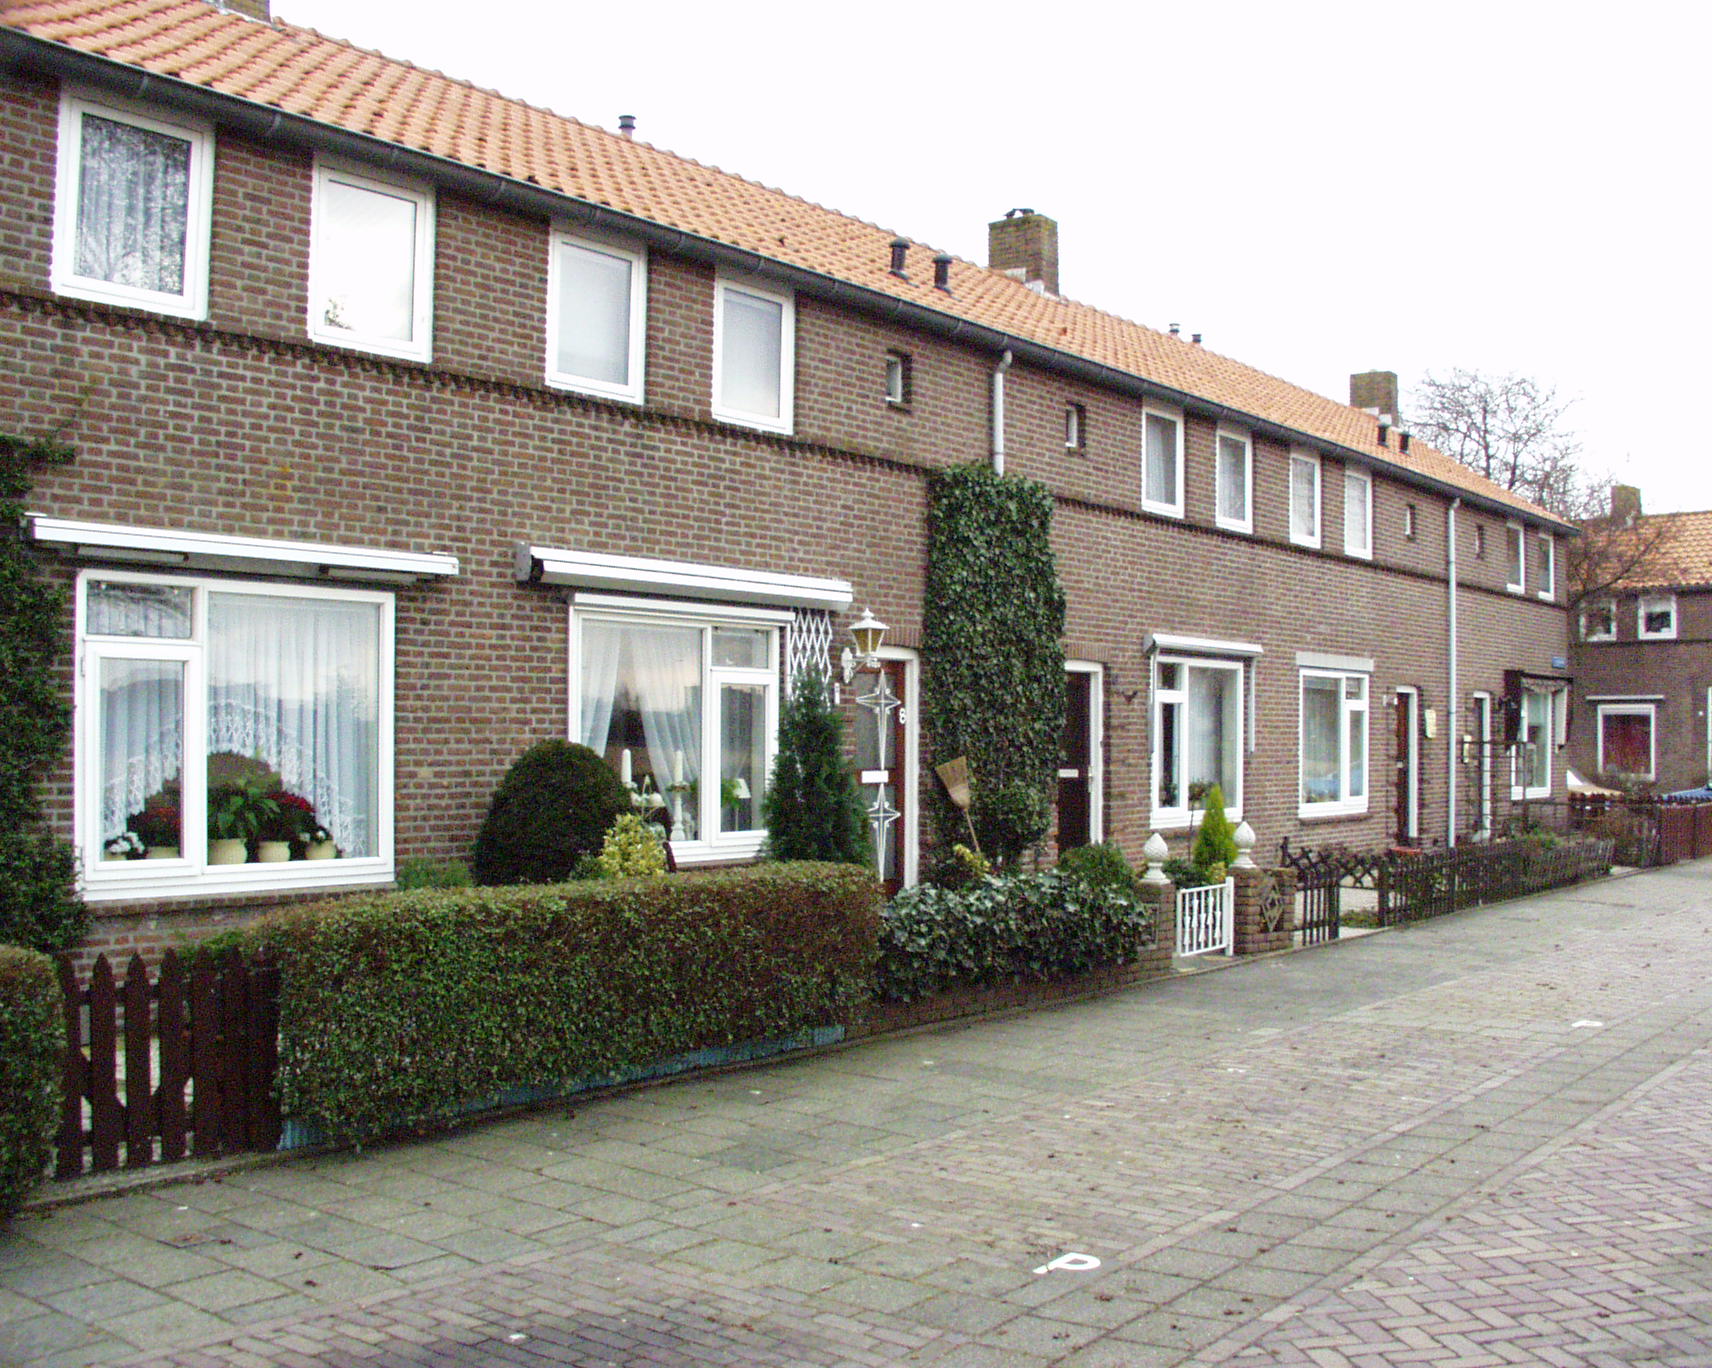 Romijnstraat 48, 2161 CR Lisse, Nederland